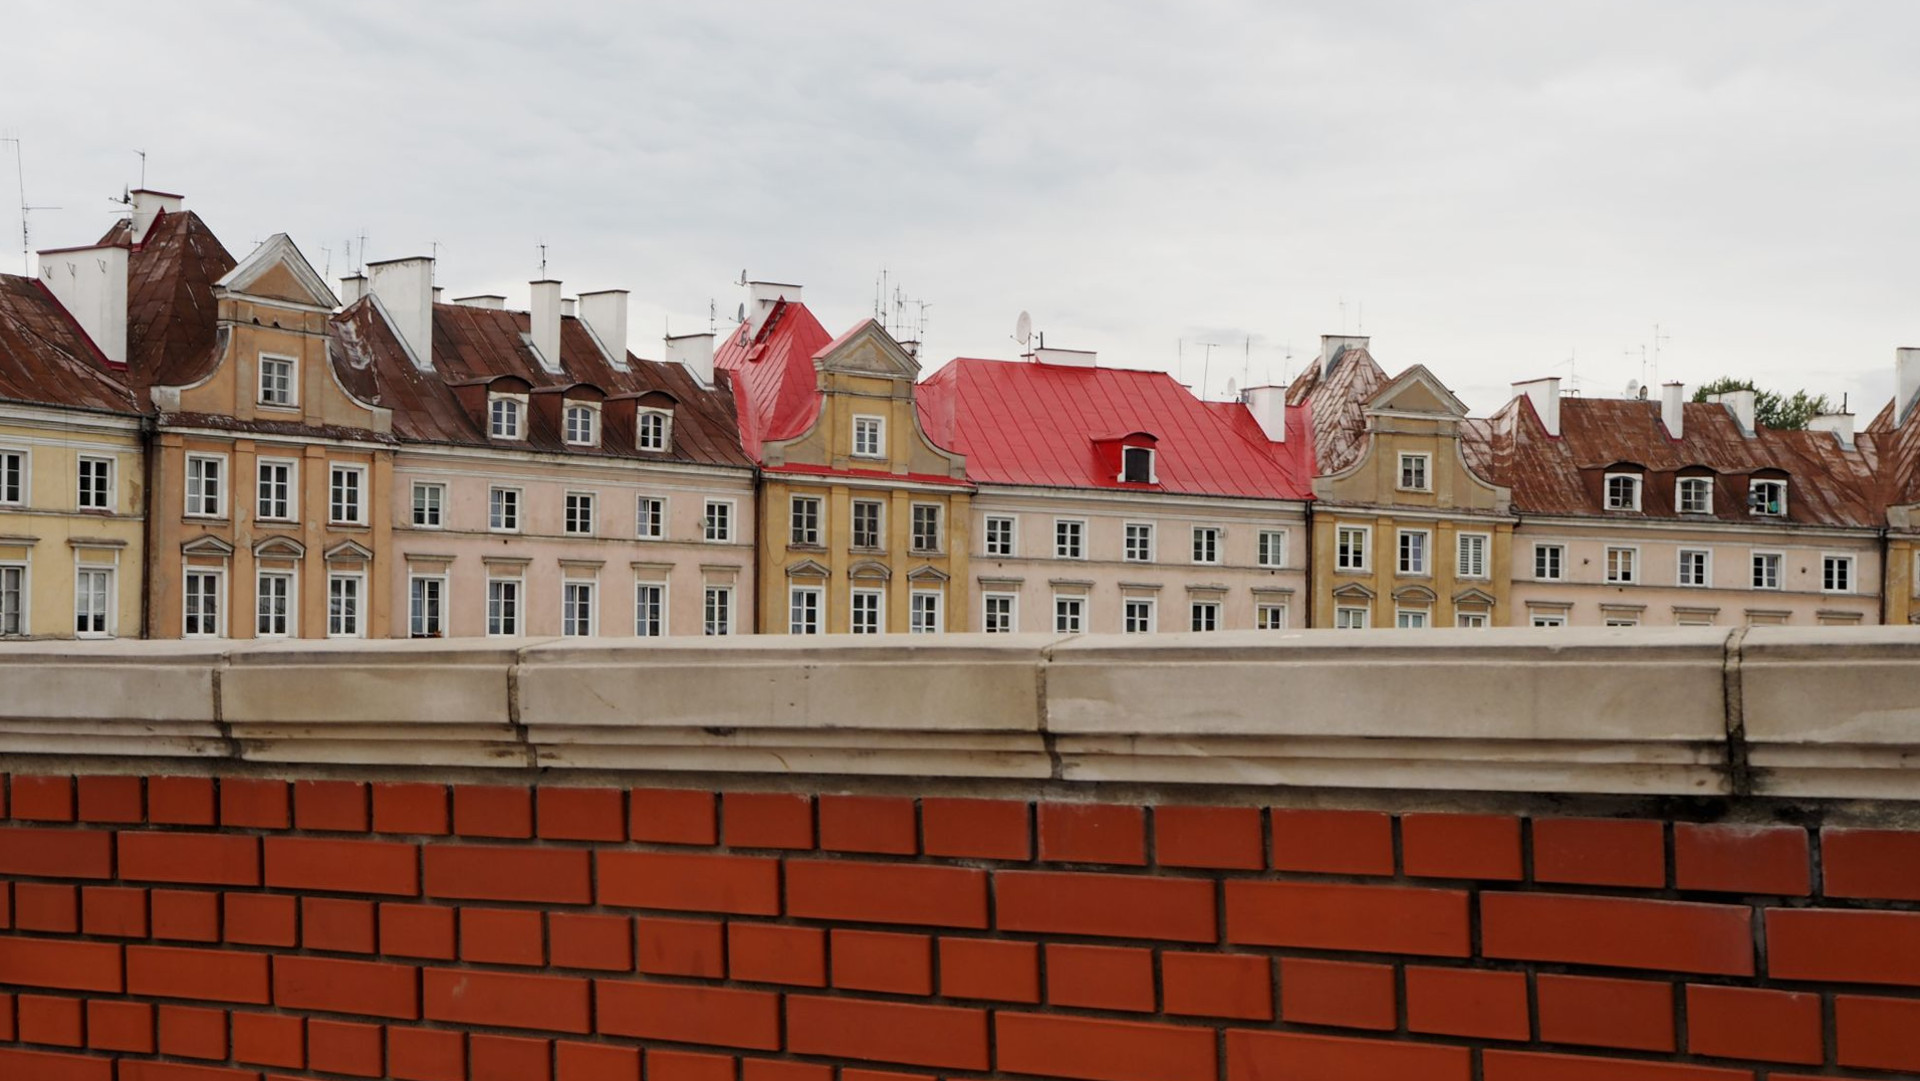 Hinter einer Steinmauer verbirgt sich ein in pastellfarbener Häuserzug der Altstadt Lublin in Polen.